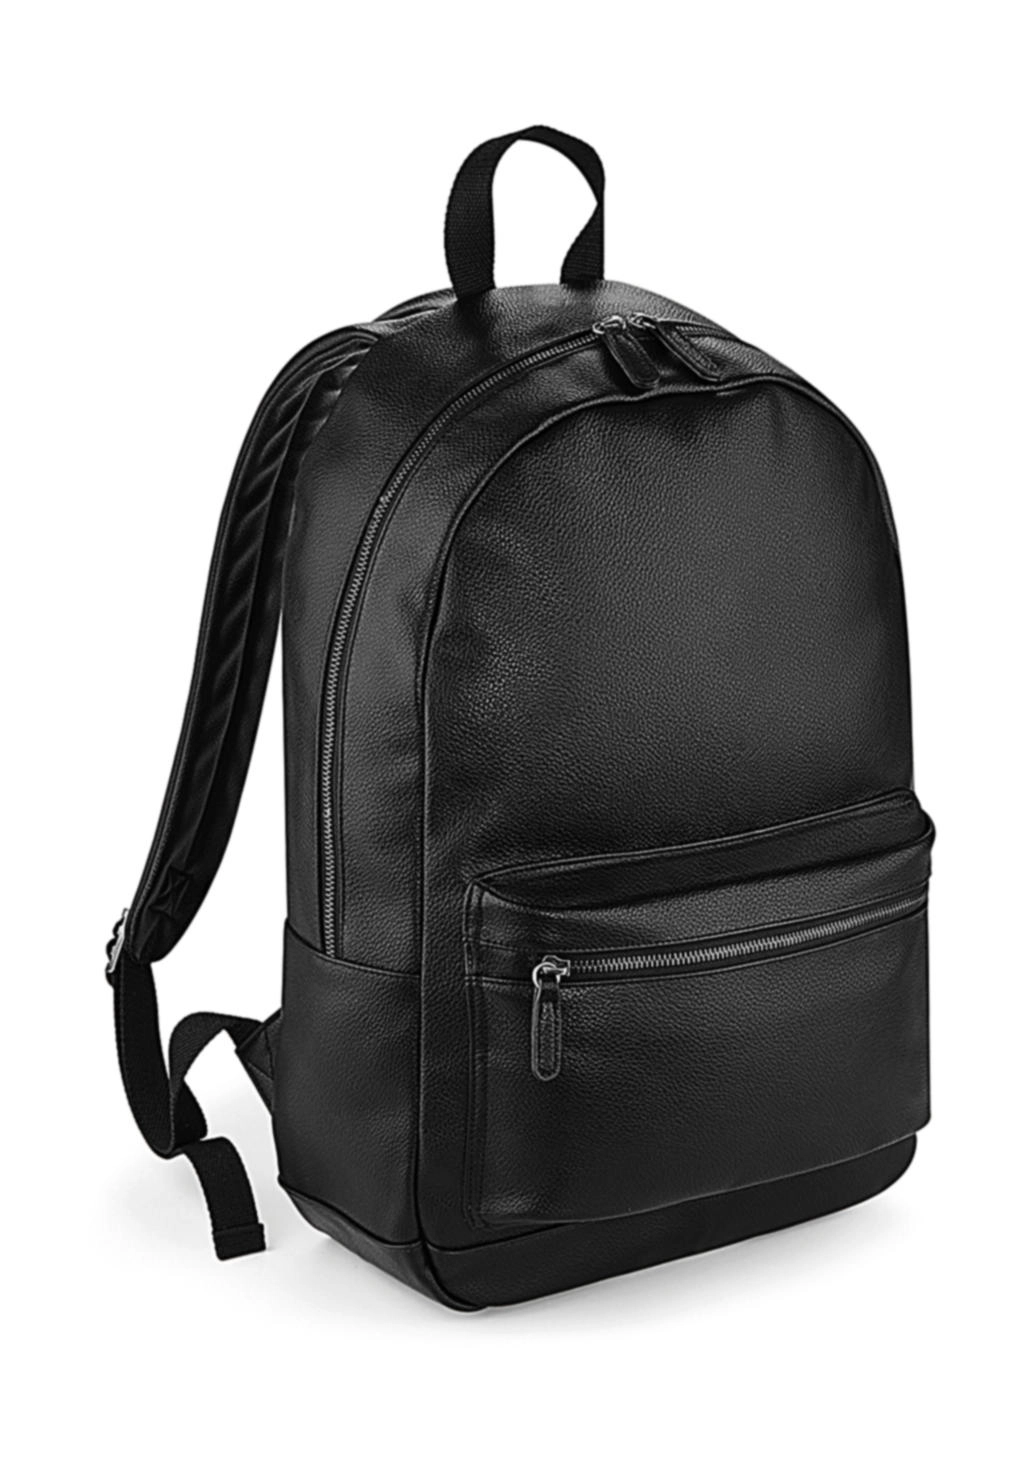 Faux Leather Fashion Backpack zum Besticken und Bedrucken in der Farbe Black mit Ihren Logo, Schriftzug oder Motiv.